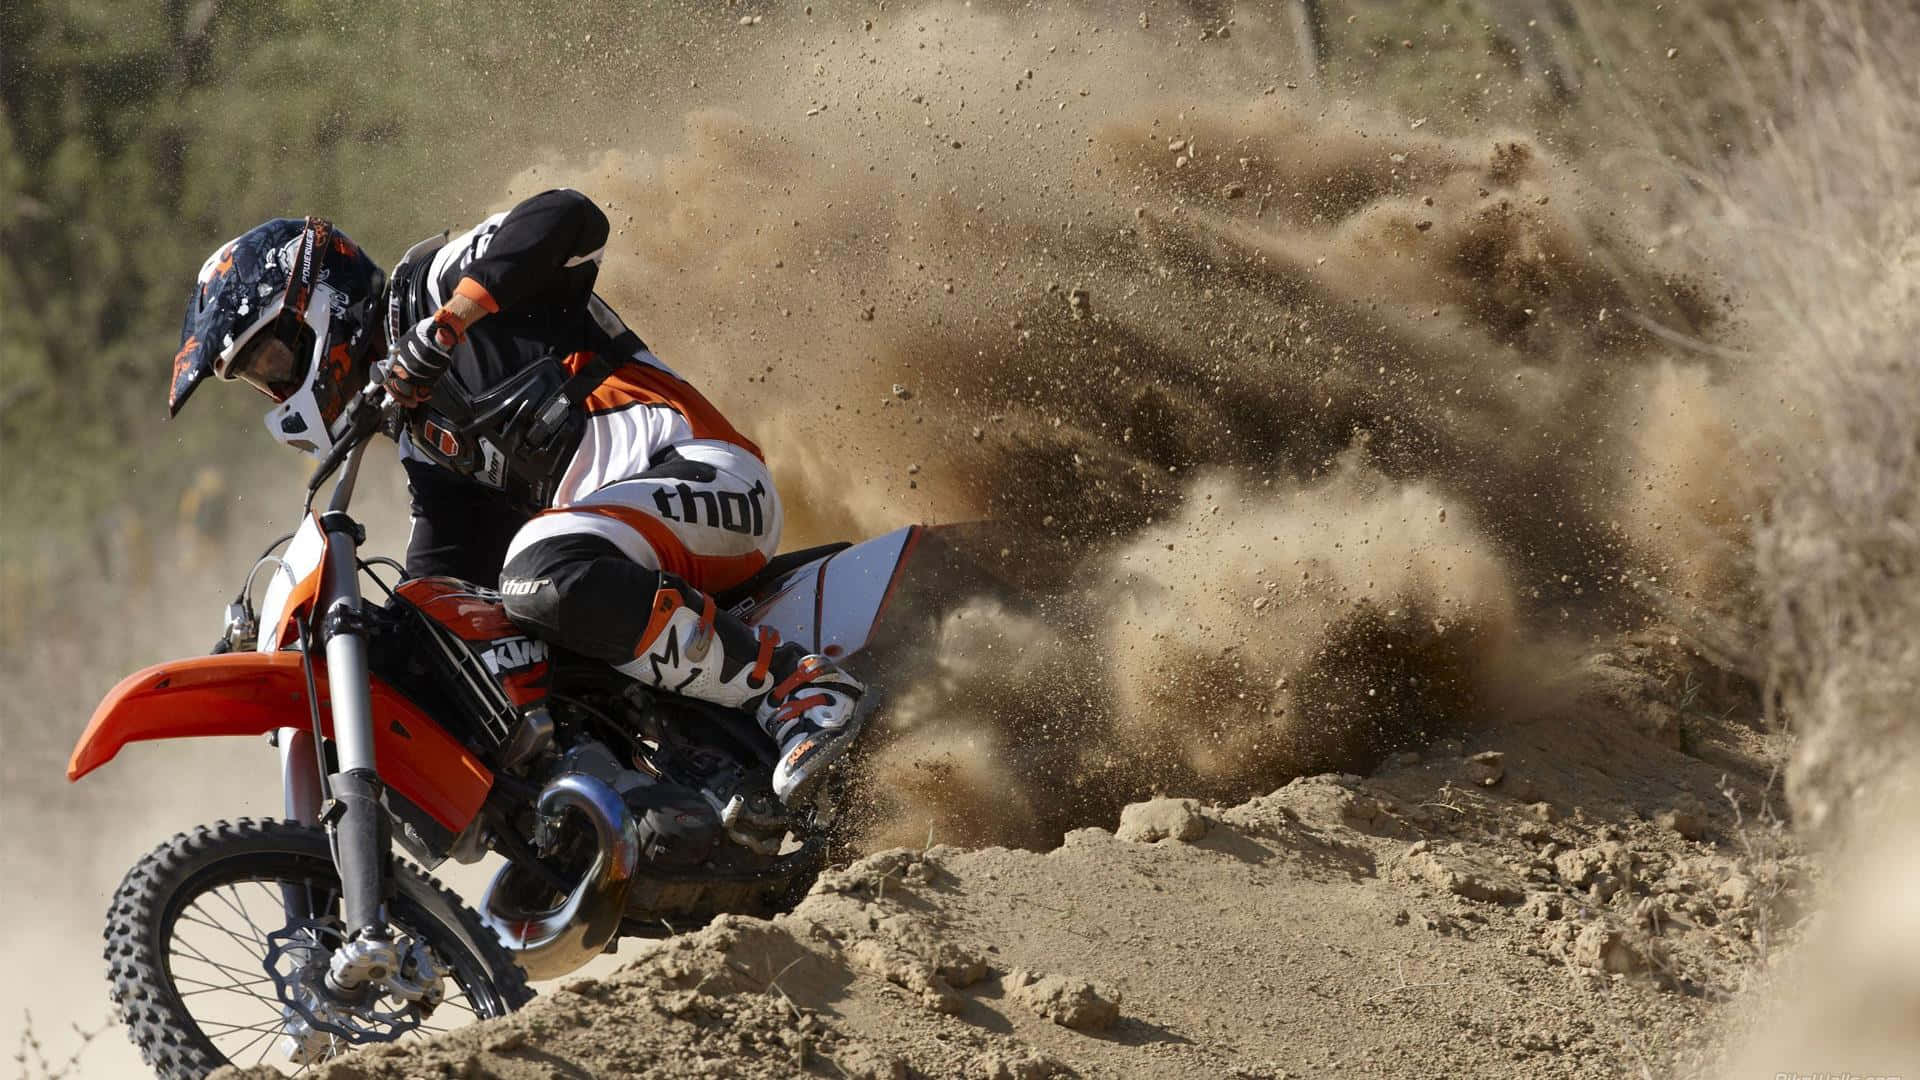 Motocrossrider Atrapando El Aire En Un Salto De Tierra.